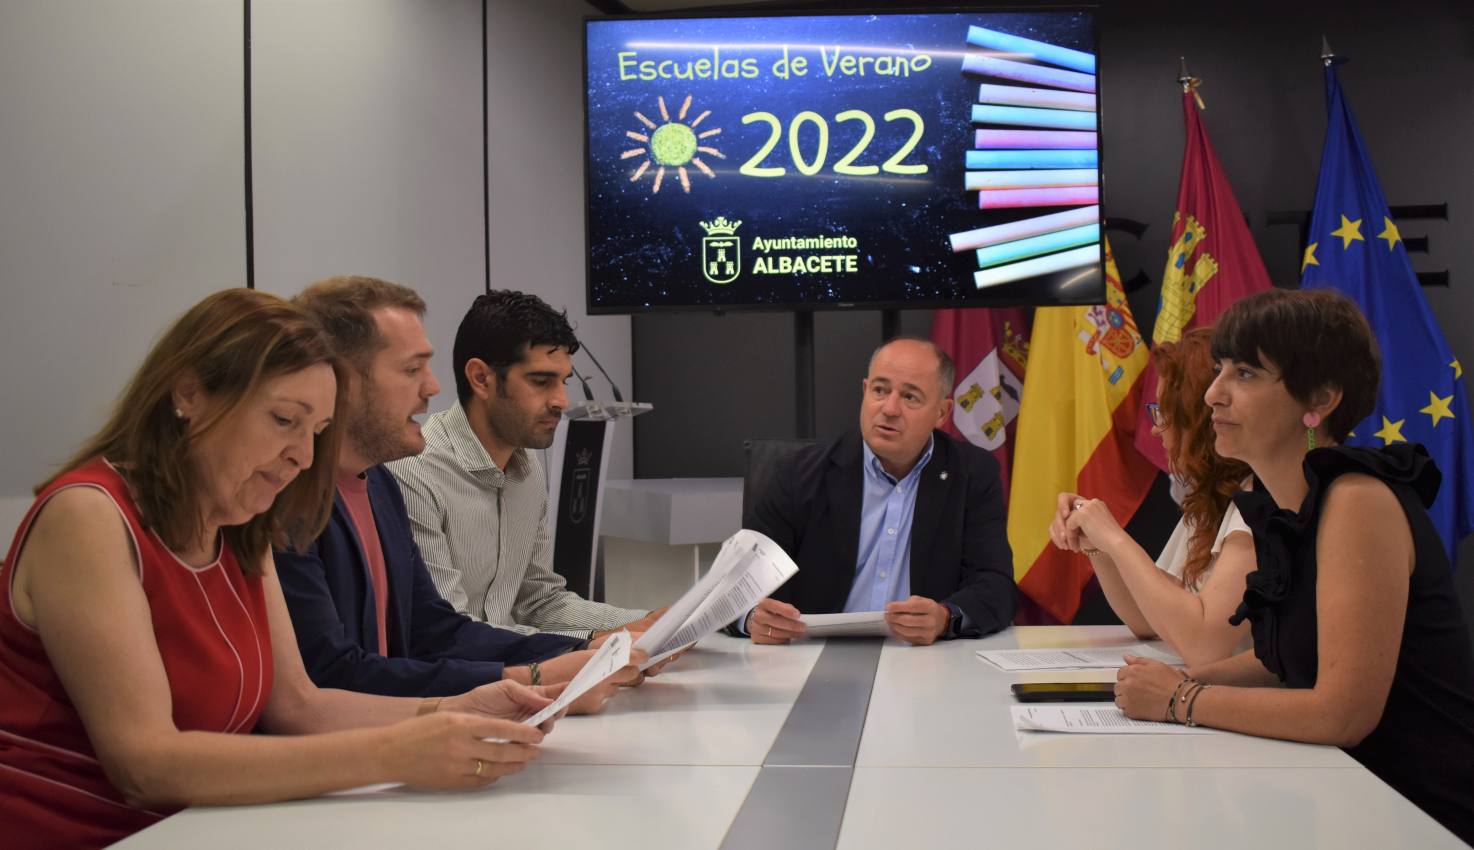 El Ayuntamiento de Albacete abre el próximo 13 de junio el plazo de inscripción a sus Escuelas de Verano.